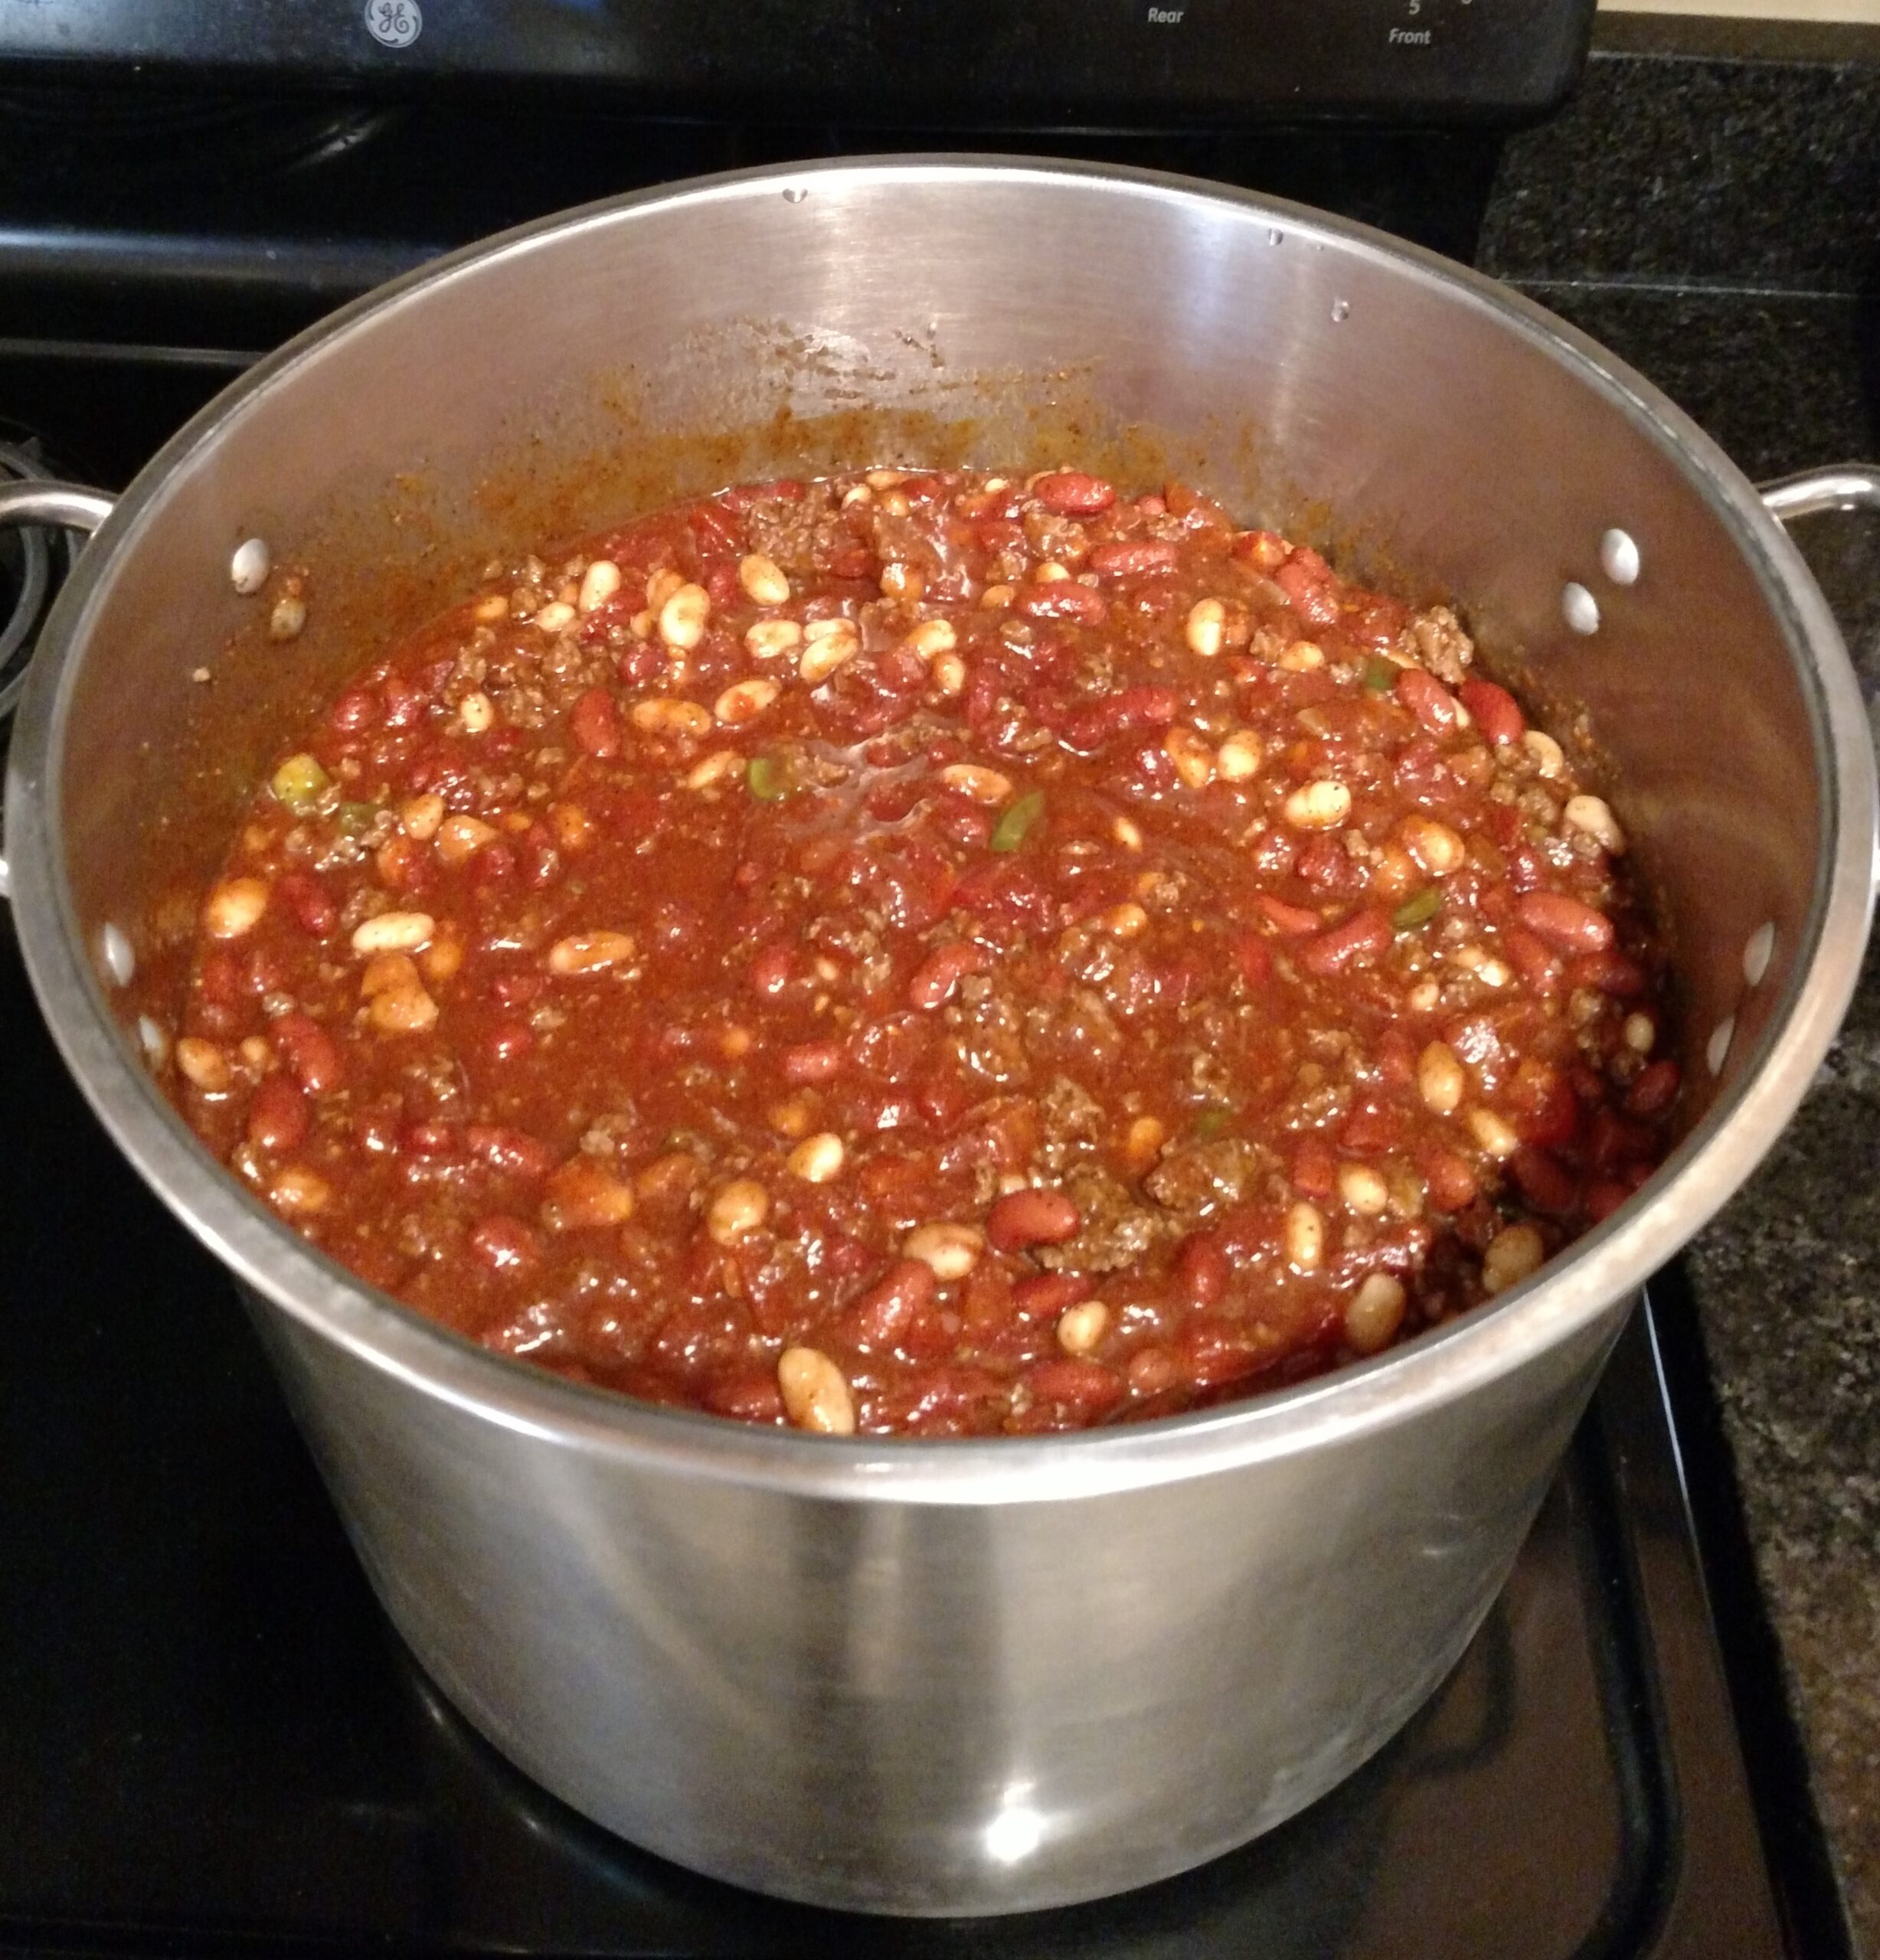 Big Batch Homemade Chili on the stove